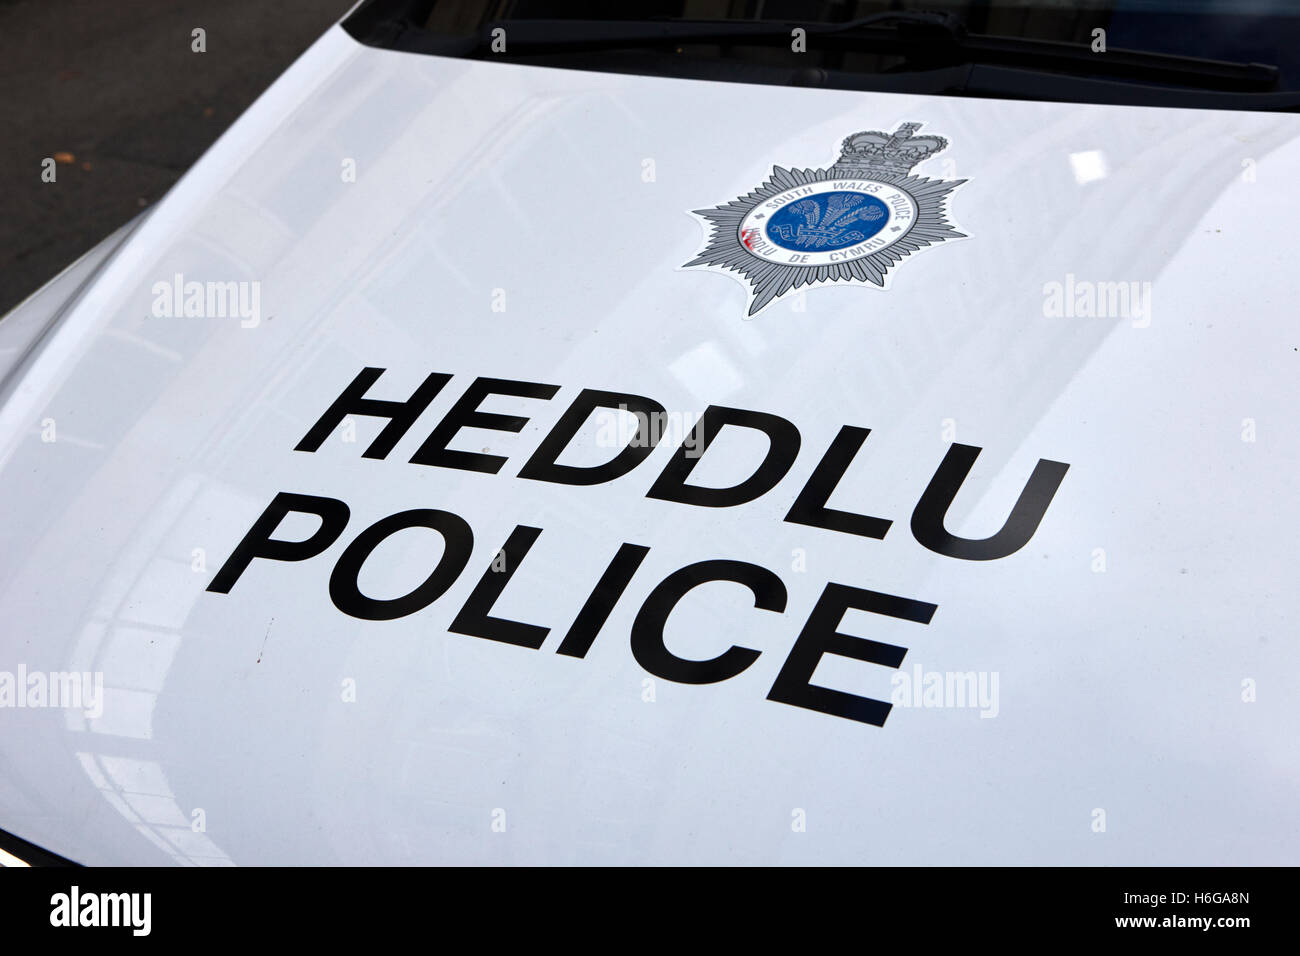 Galles del sud heddlu polizia veicolo bilingue livrea Galles Cardiff Regno Unito Foto Stock